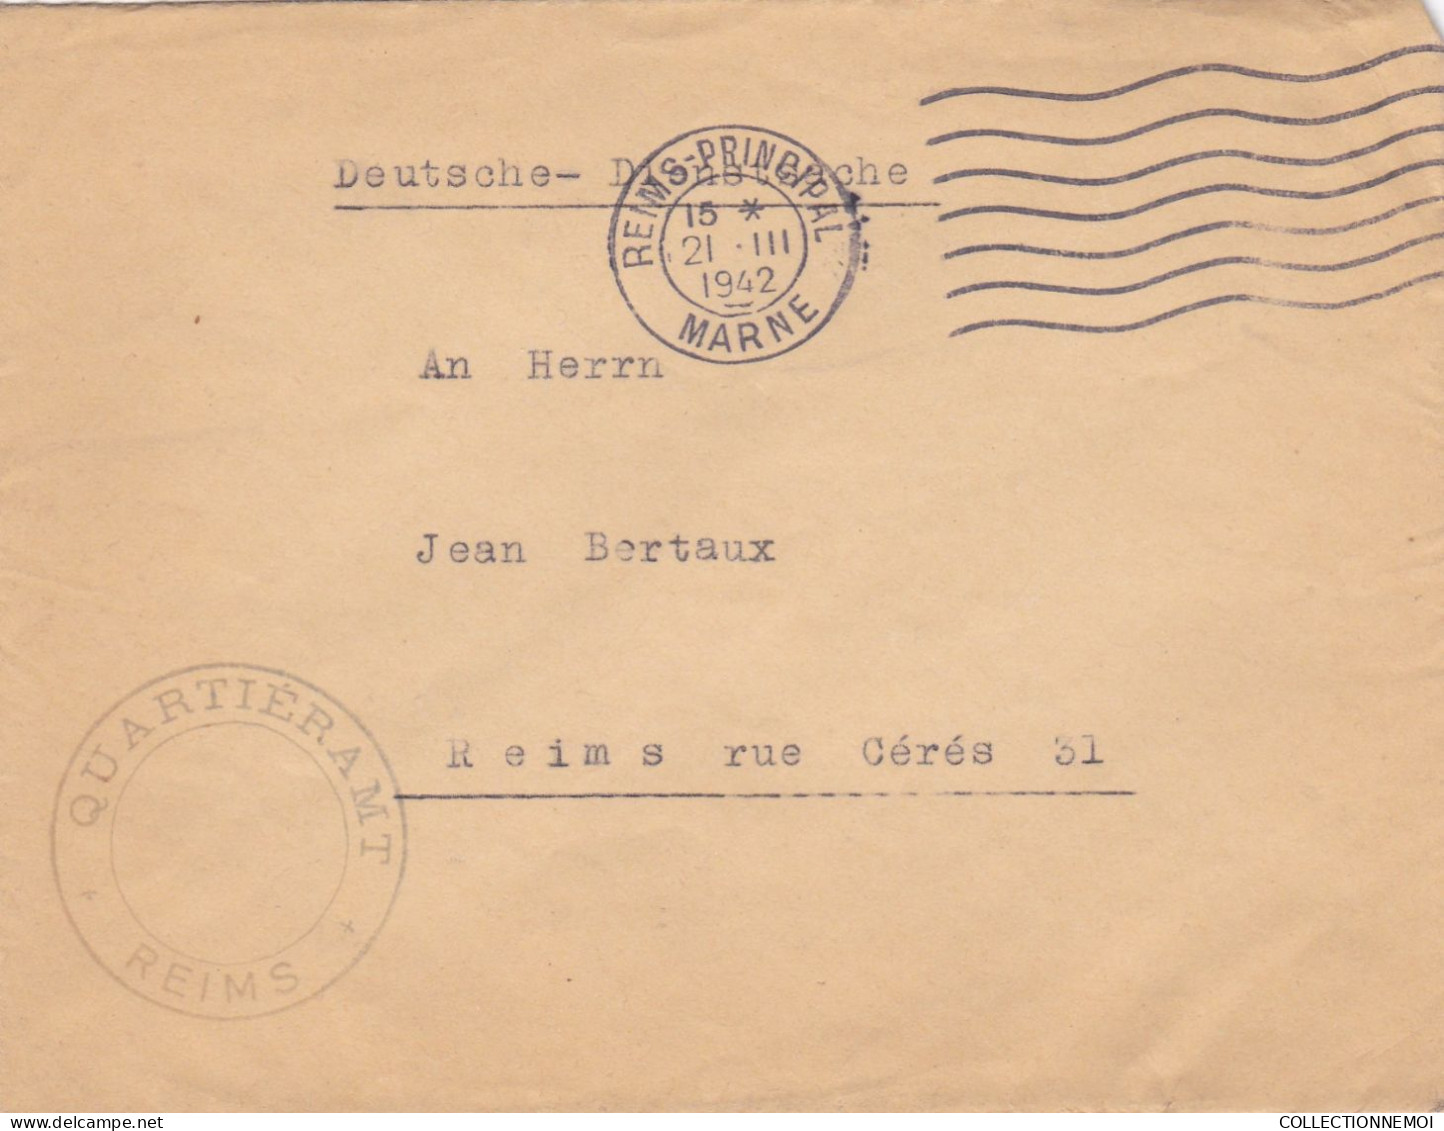 LOT DE 40 ,, lettres  période de GUERRE ,,1939/45  pour specialiste ,,,scan recto et verso ,,,,et VENDUE COMME C'EST